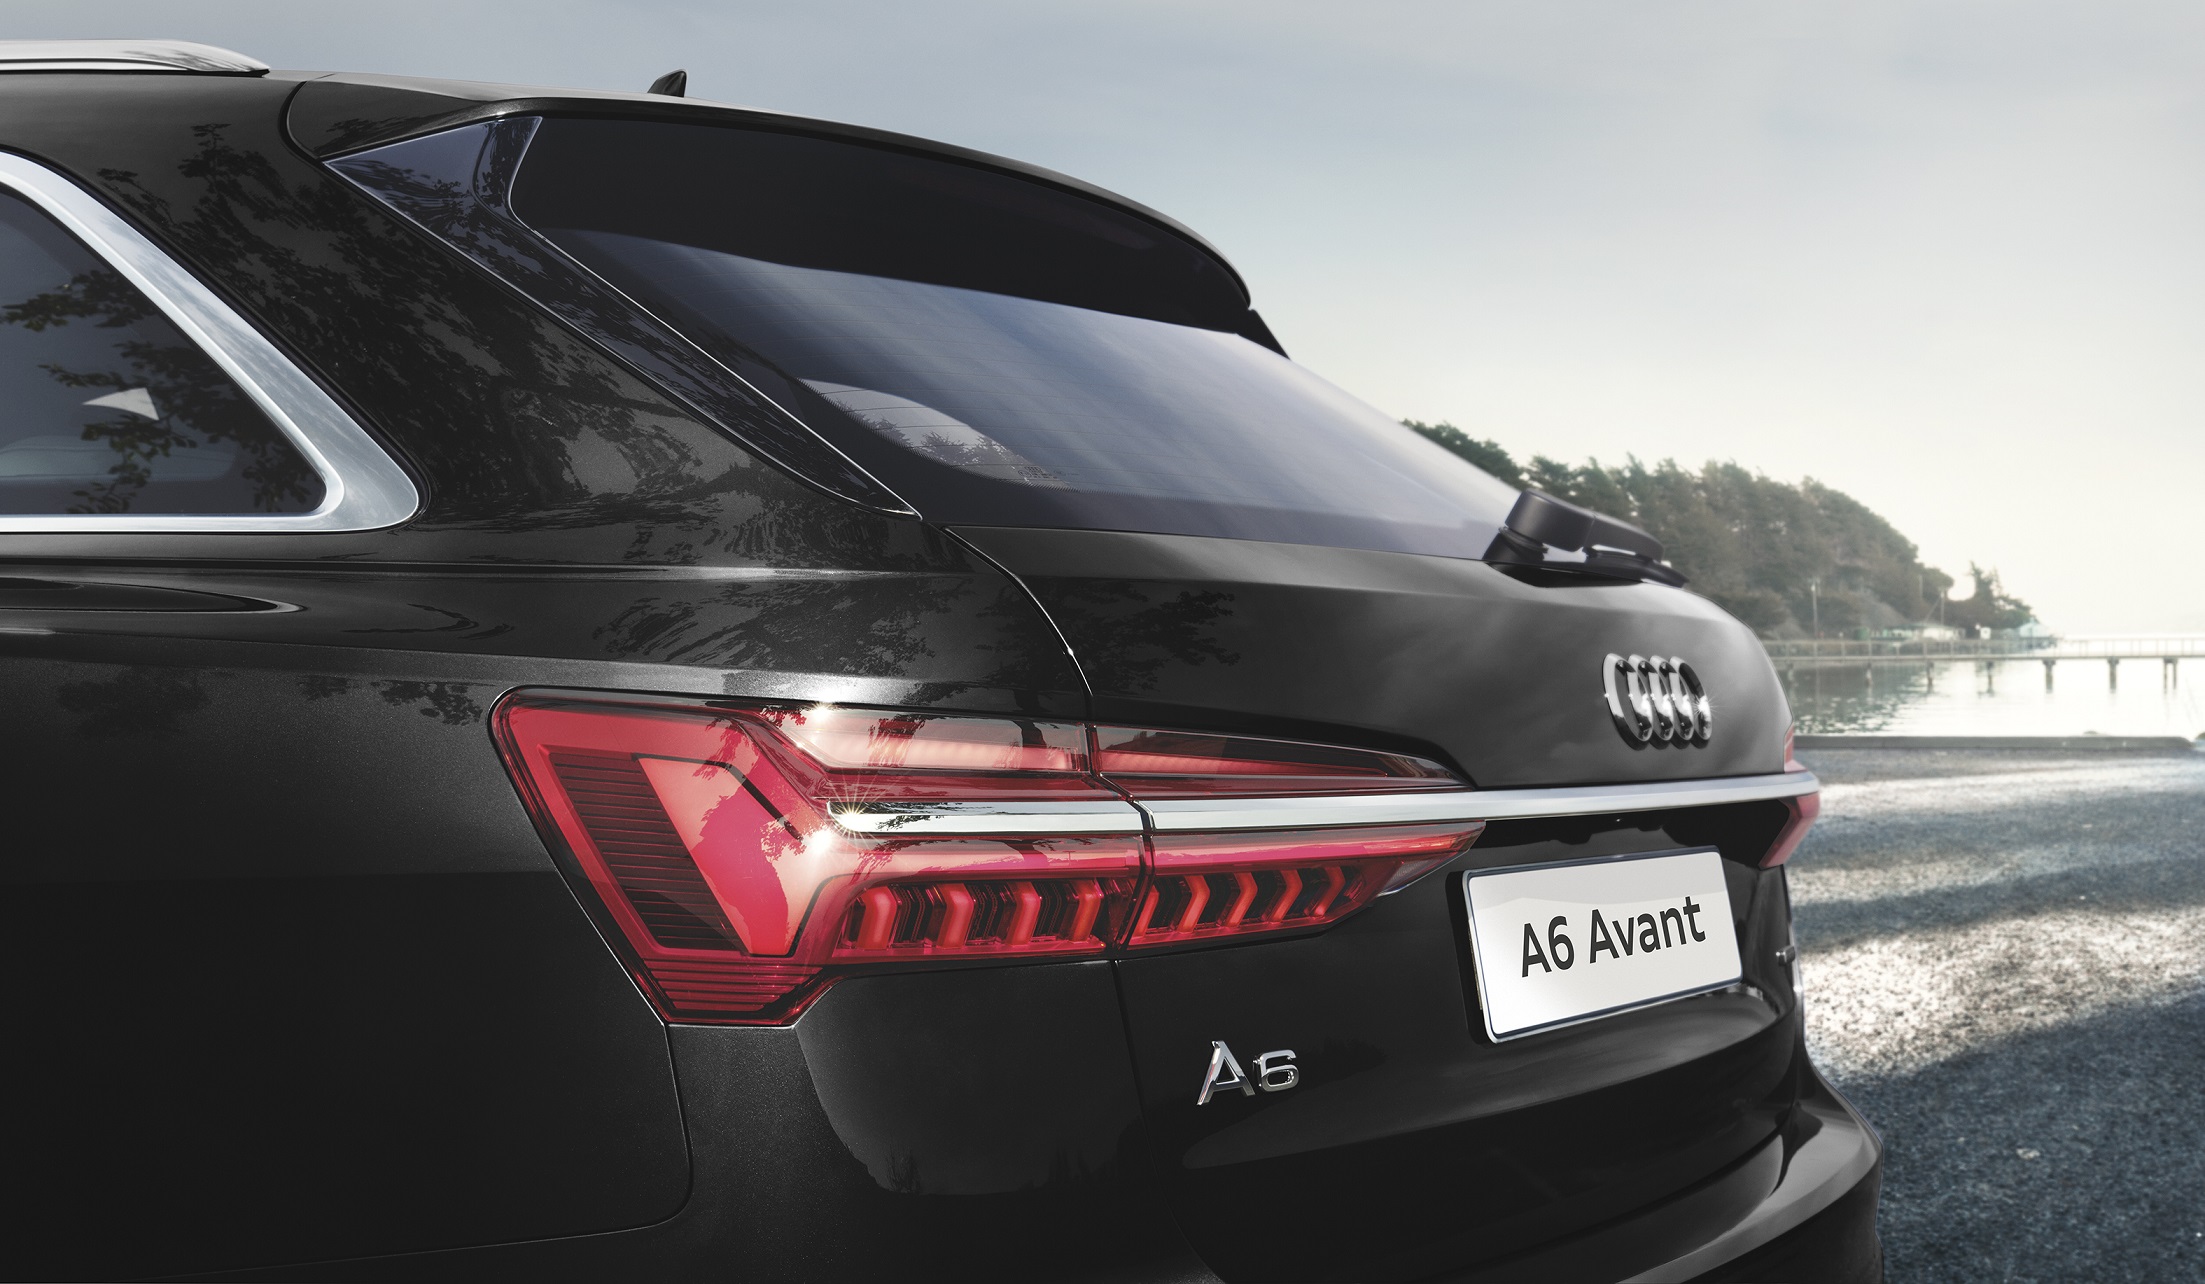 Audi The New A6 จัดหนัก 2 รุ่นย่อย เคาะราคาเท่ากัน 3.999 ล้านบาท